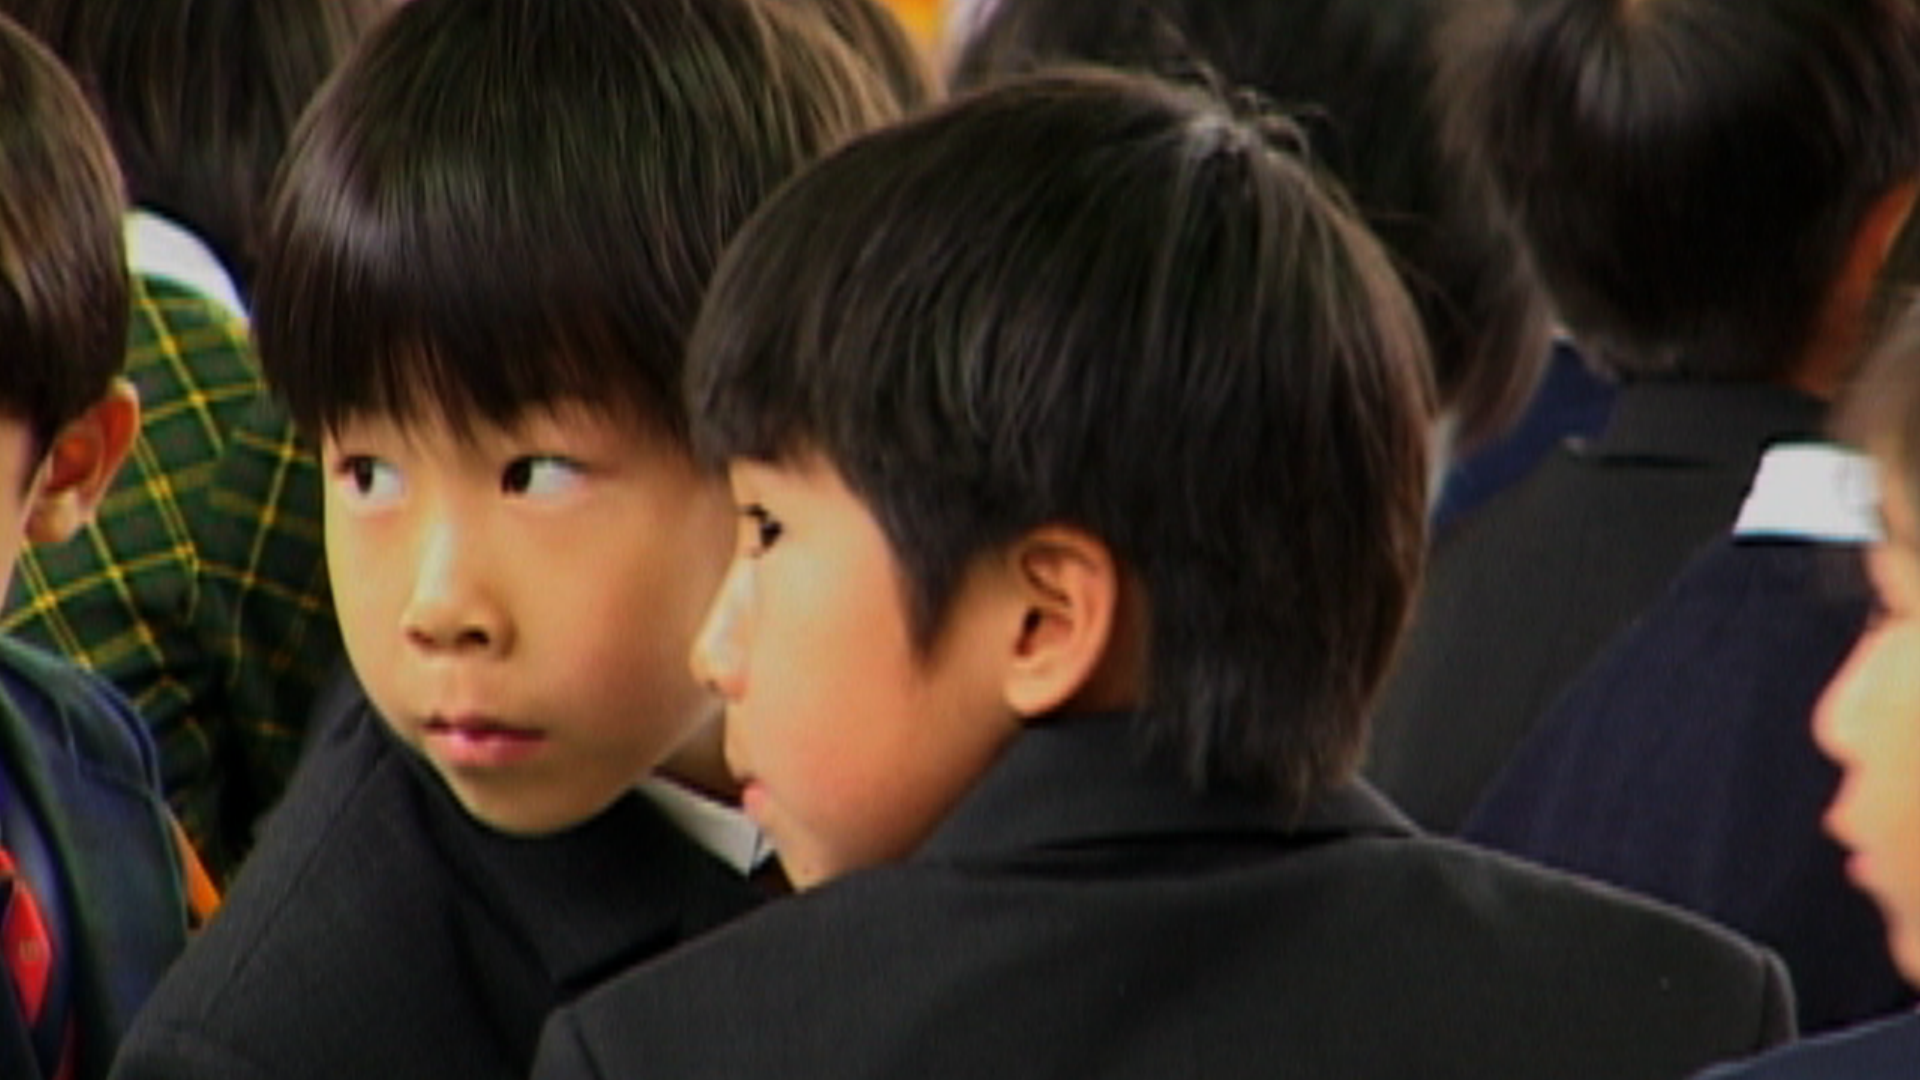 japanese school children